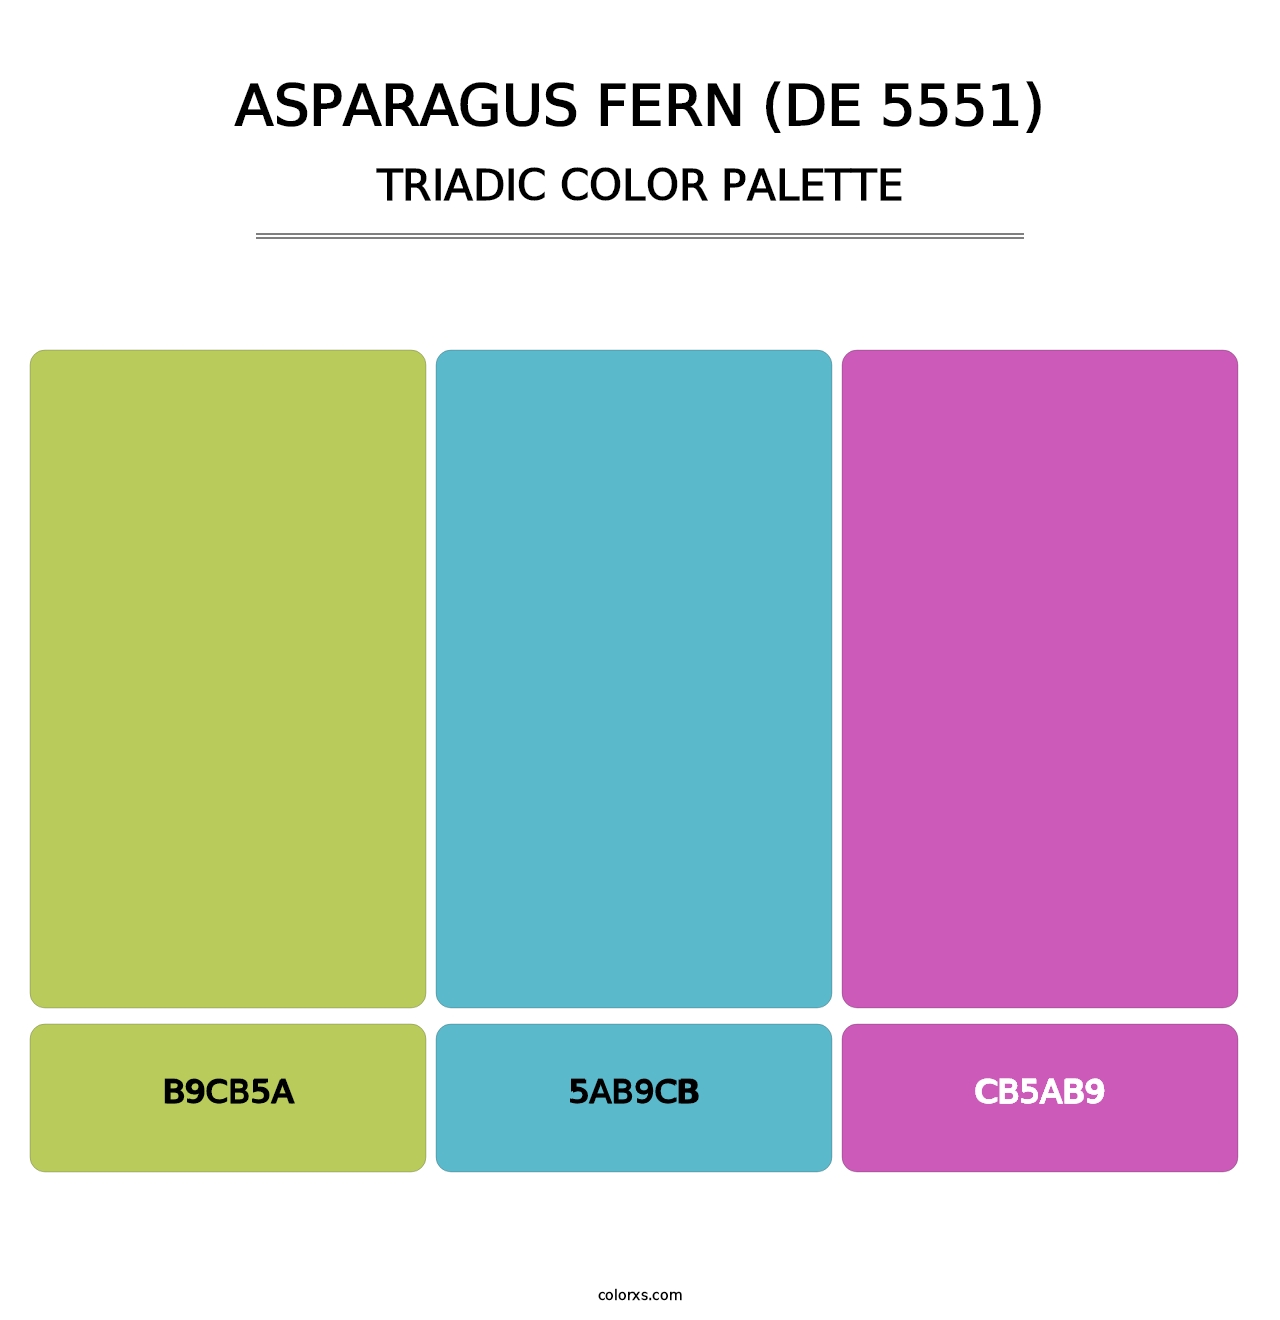 Asparagus Fern (DE 5551) - Triadic Color Palette